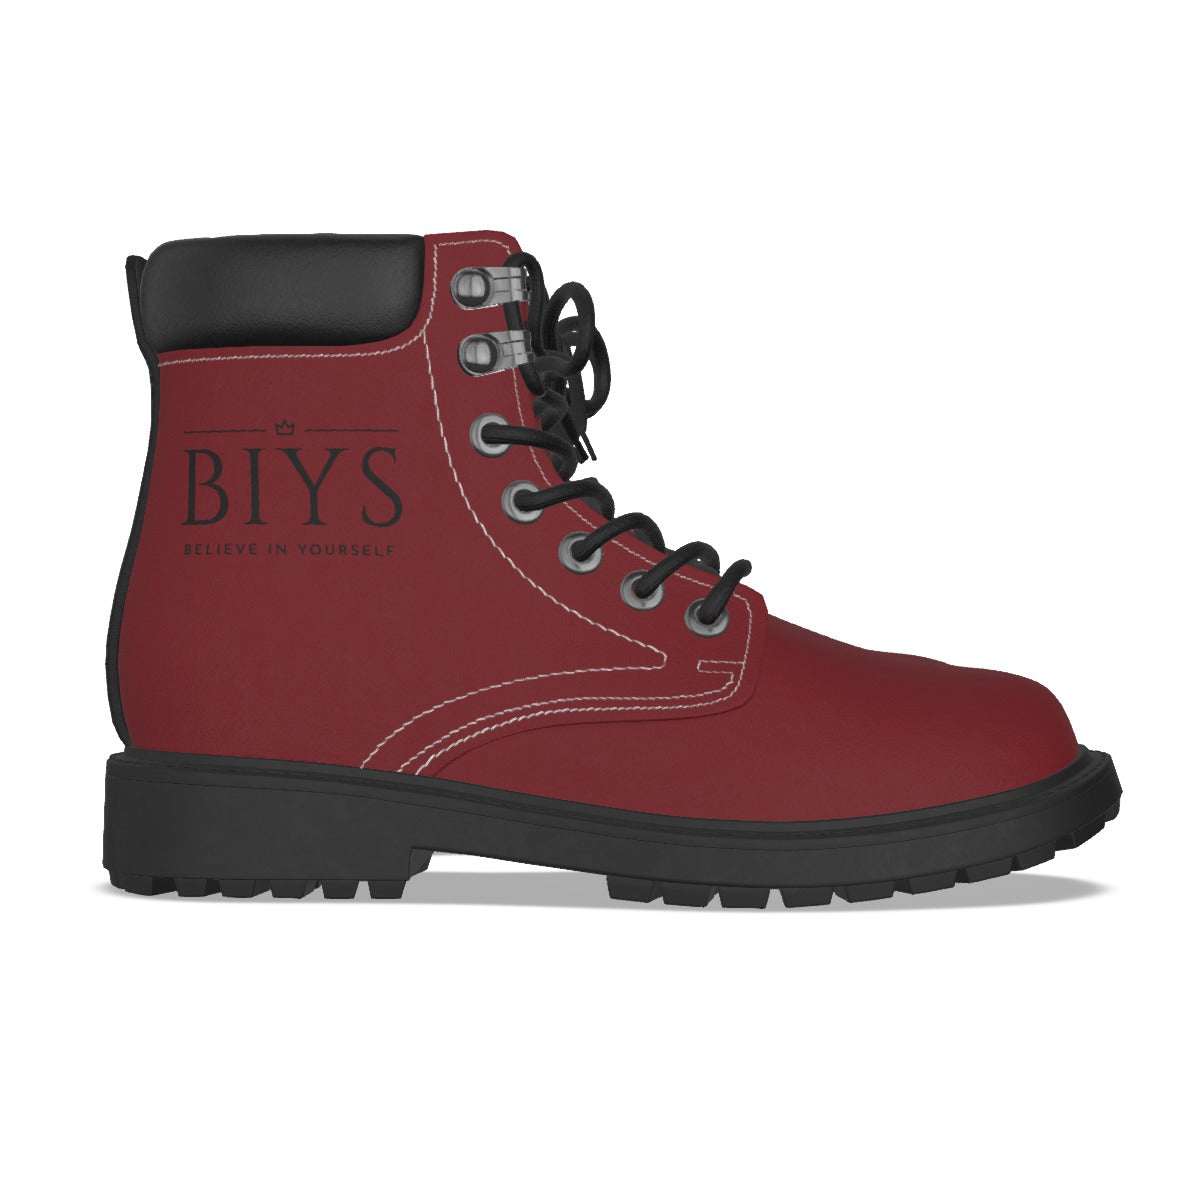 BIYS Women's Dark red Boots